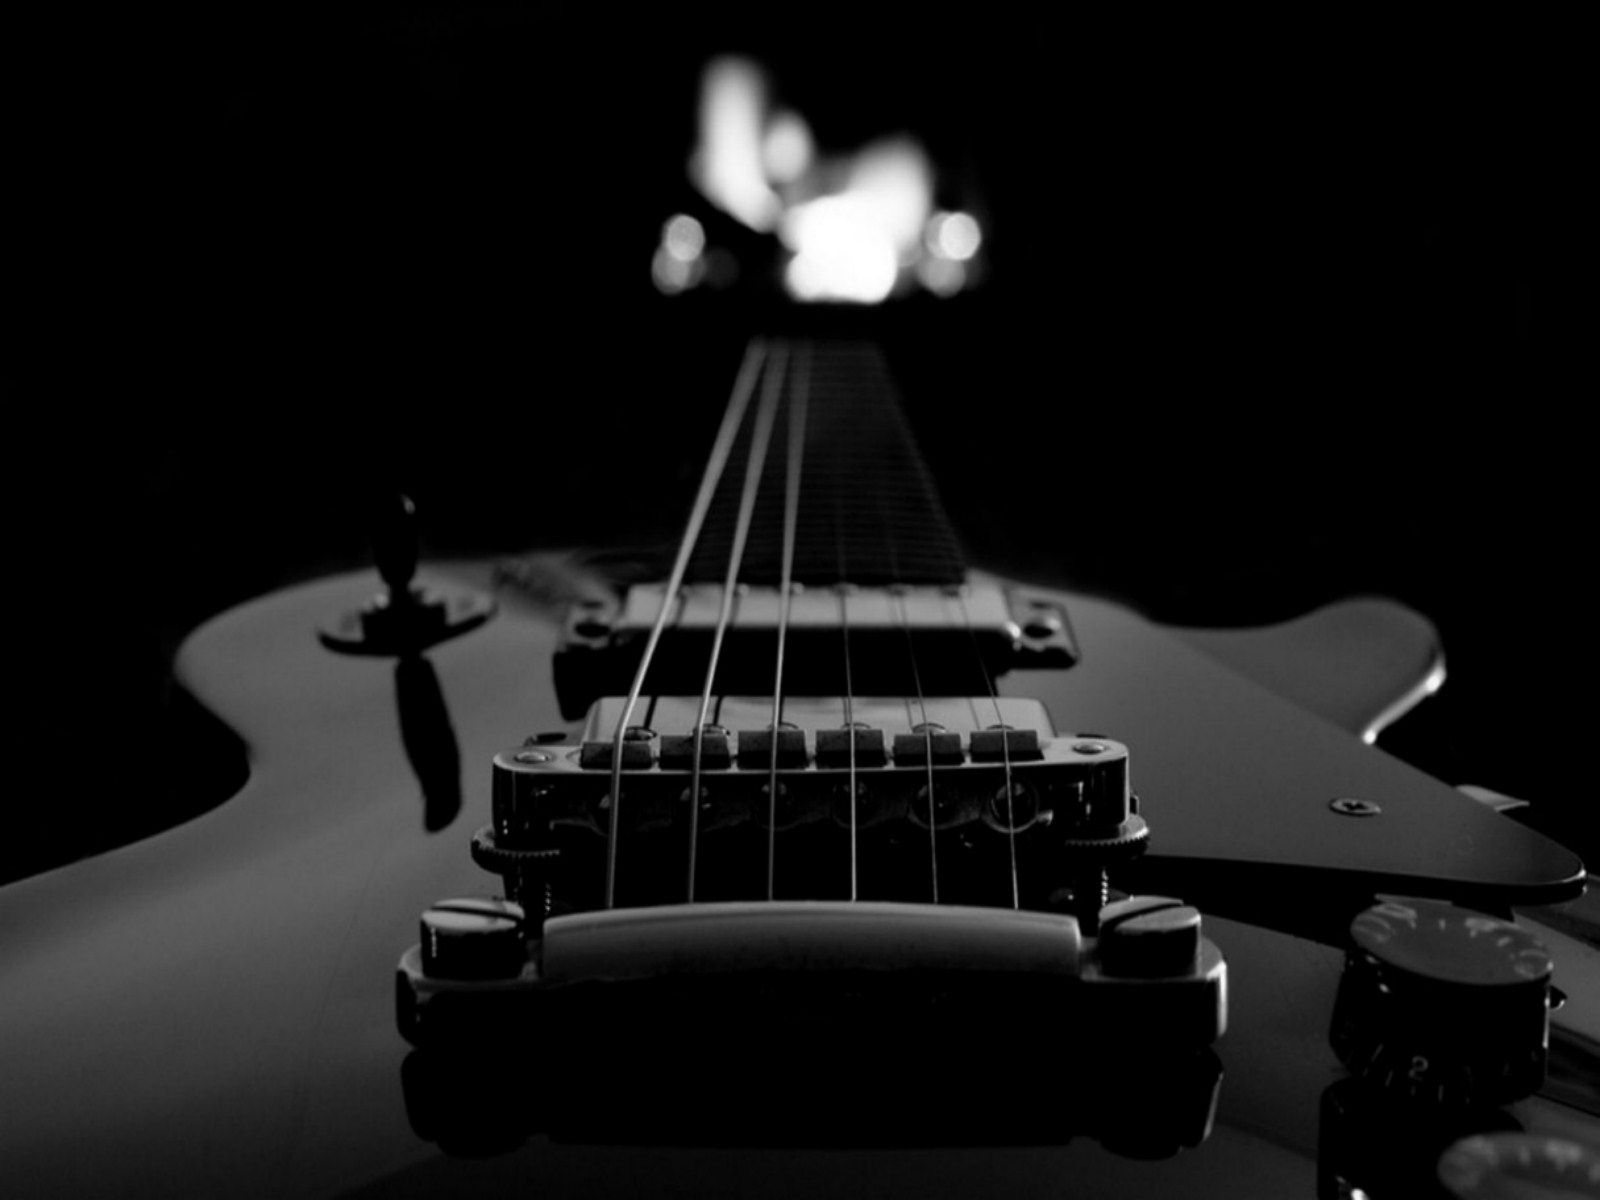 sfondo di gibson per iphone,chitarra,strumenti a corda pizzicati,strumento musicale,chitarra elettrica,fotografia di still life